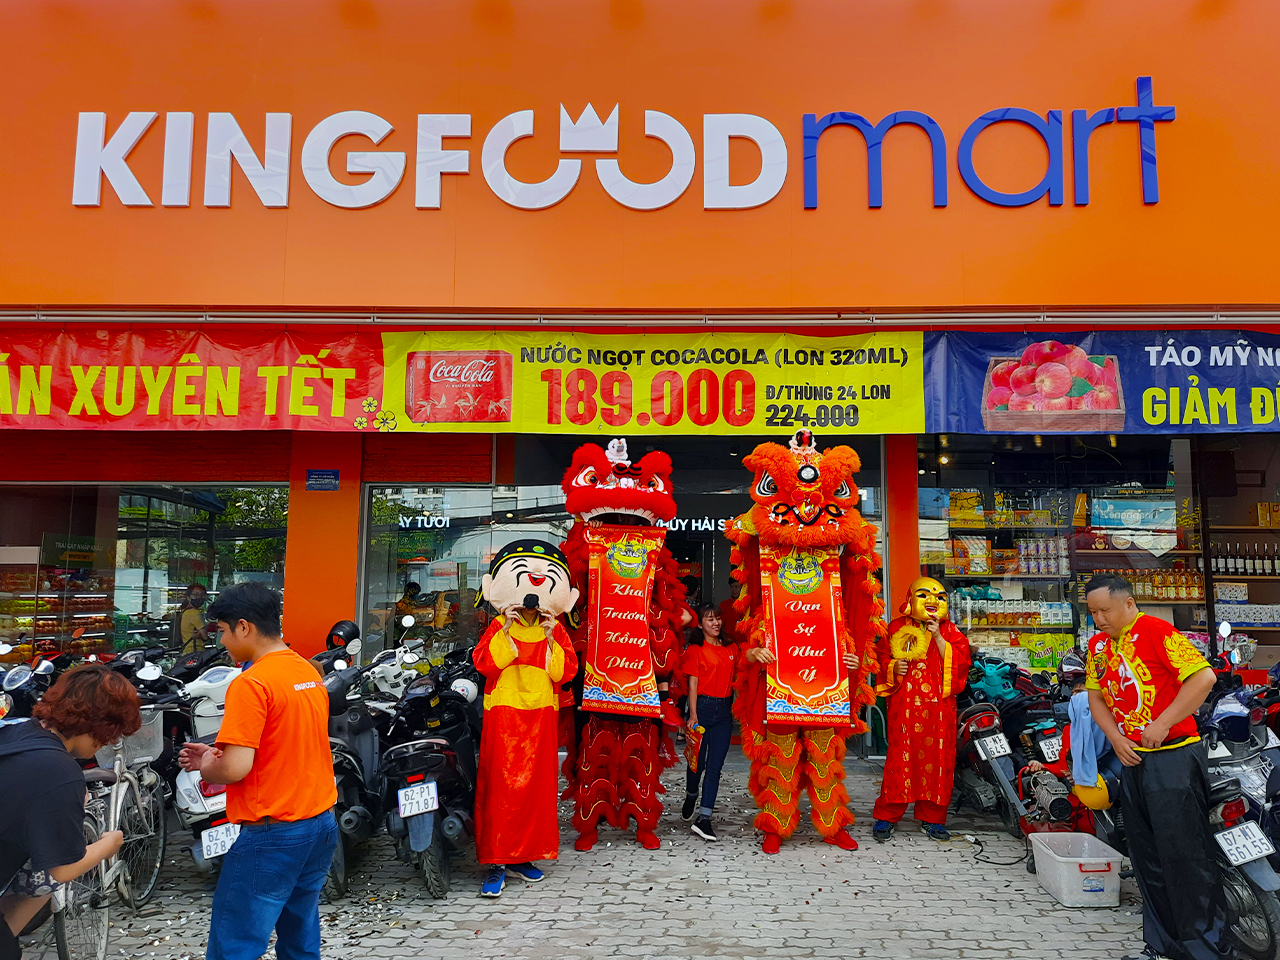 Không Khí Mua Sắm Khai Trương Đông Vui Như Trẩy Hội Tại Kingfoodmart Lâm Văn Bền